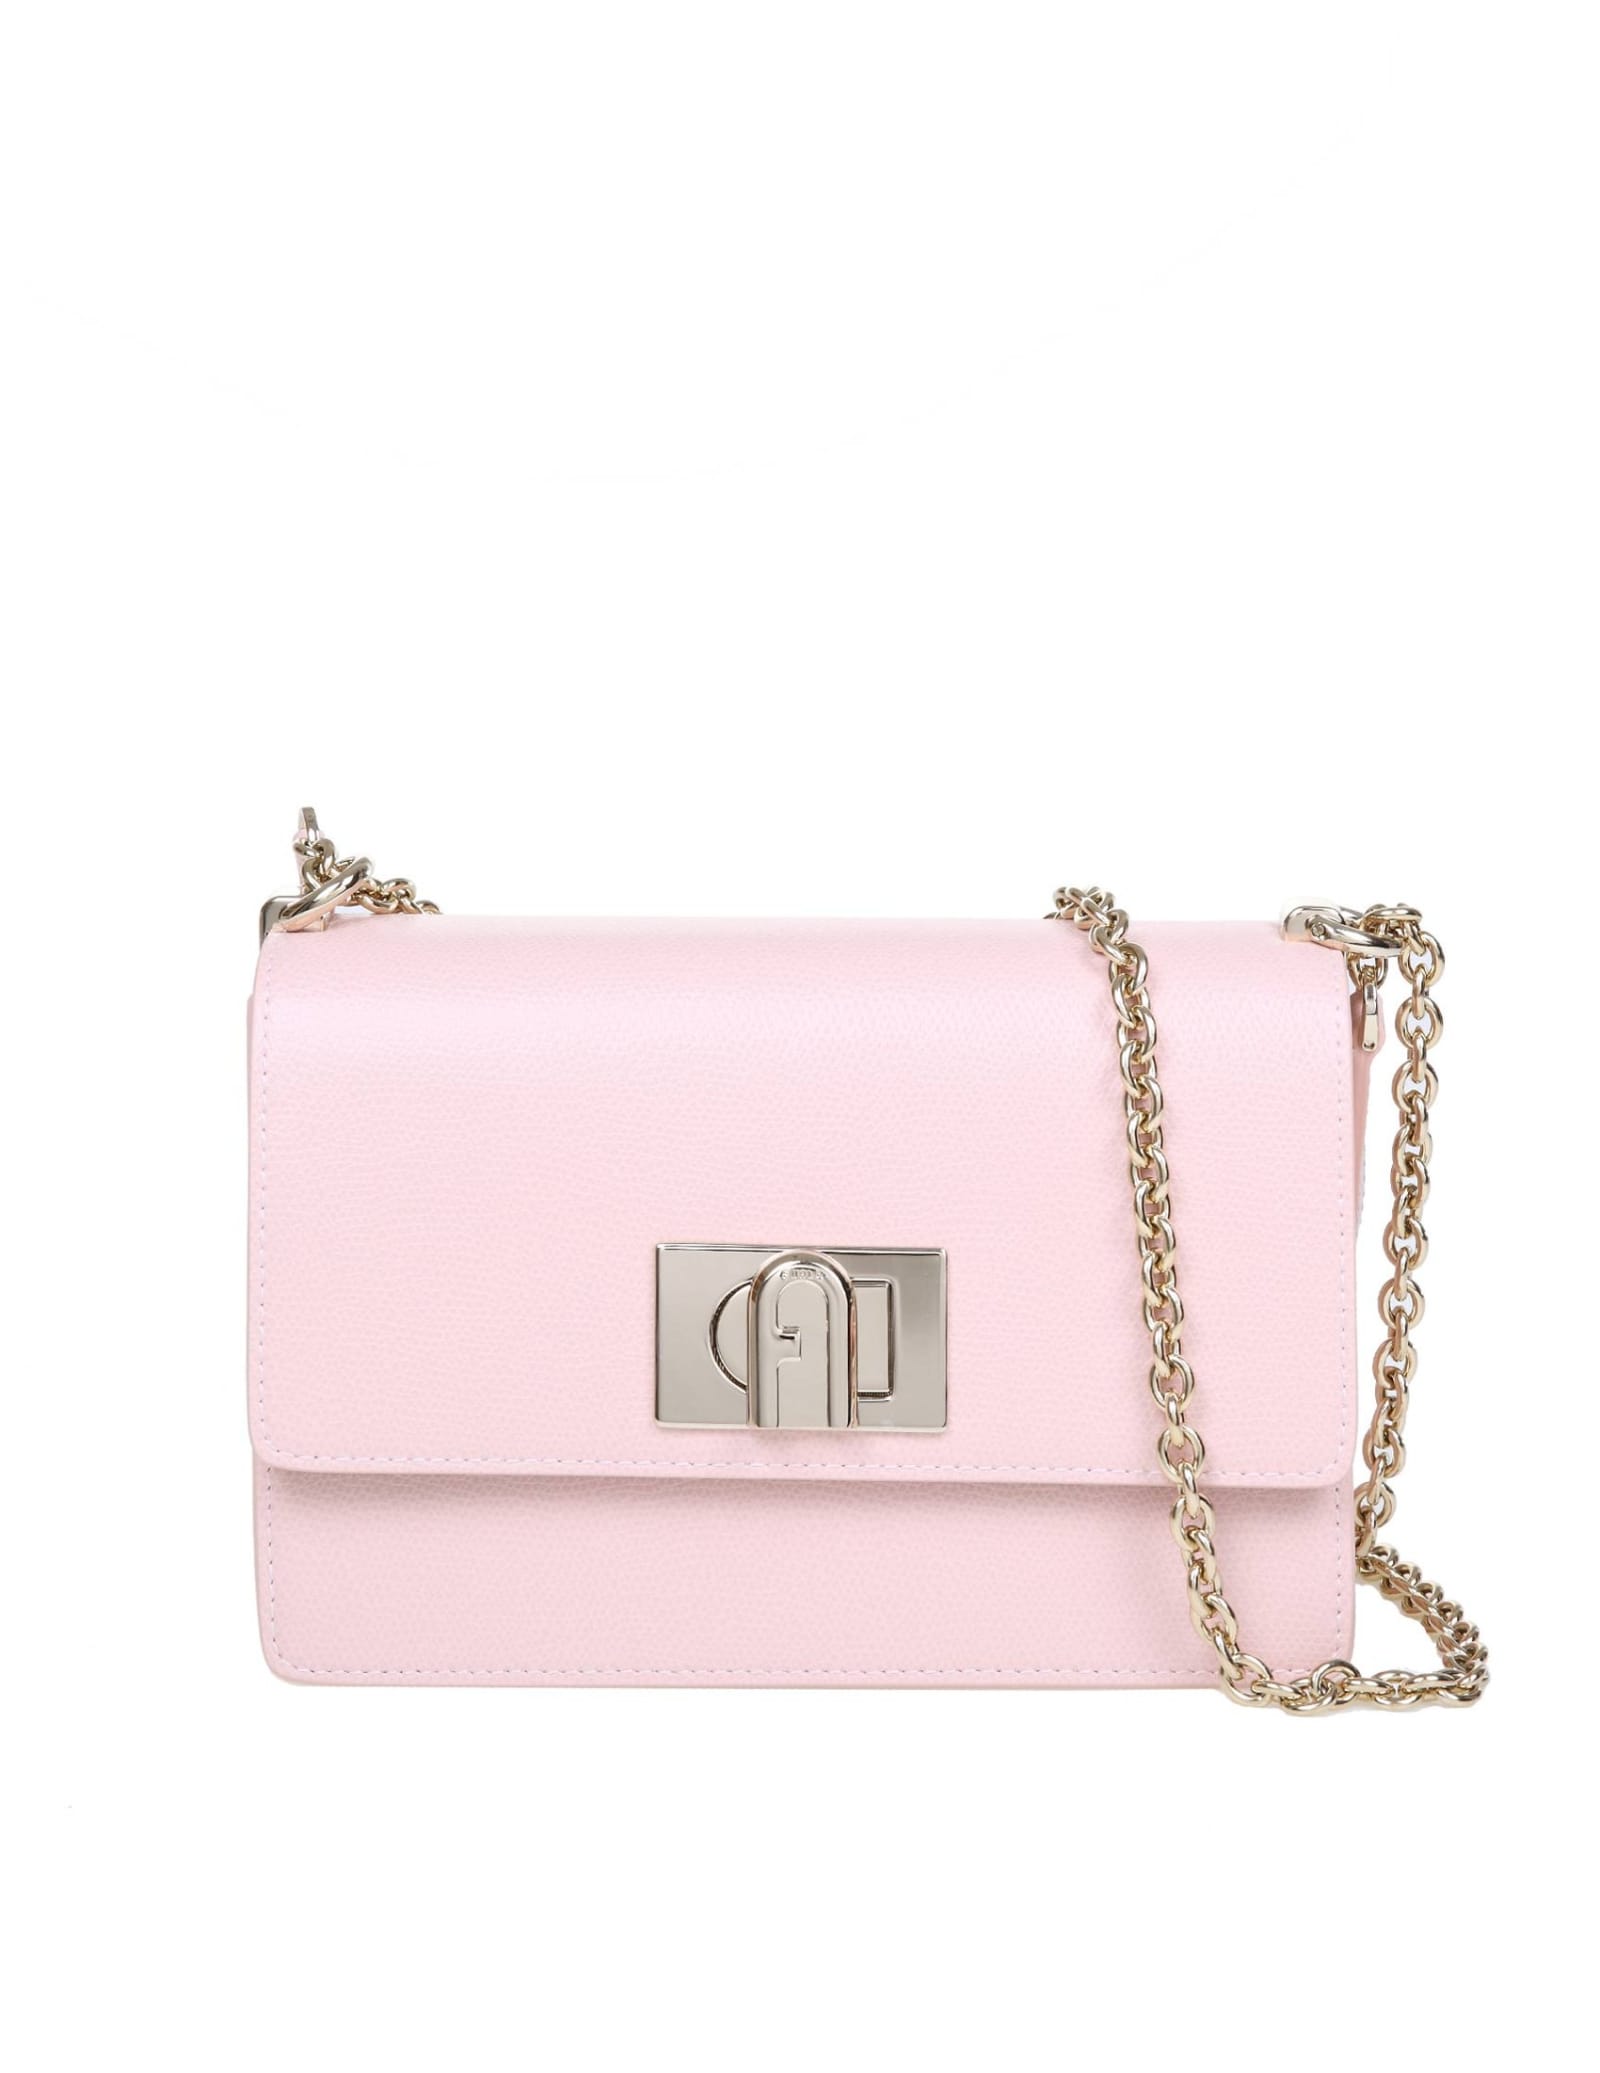 Furla 1927 Mini Shoulder Bag In Pink Color Leather